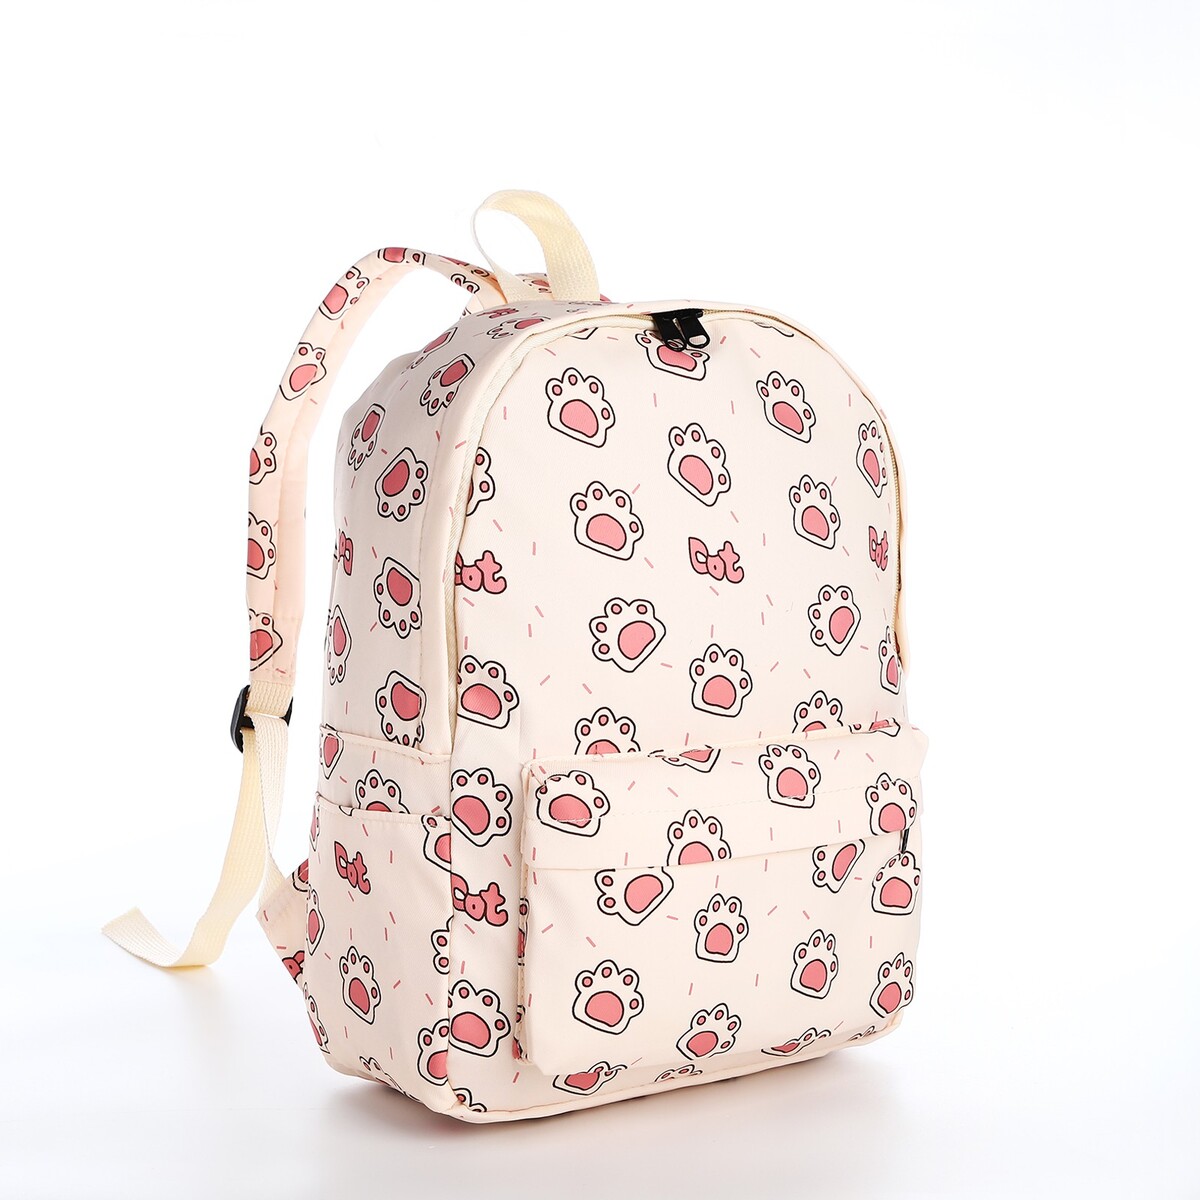 Рюкзак школьный из текстиля на молнии, 3 кармана, цвет бежевый/розовый рюкзак на молнии 3 наружных кармана бежевый зеленый